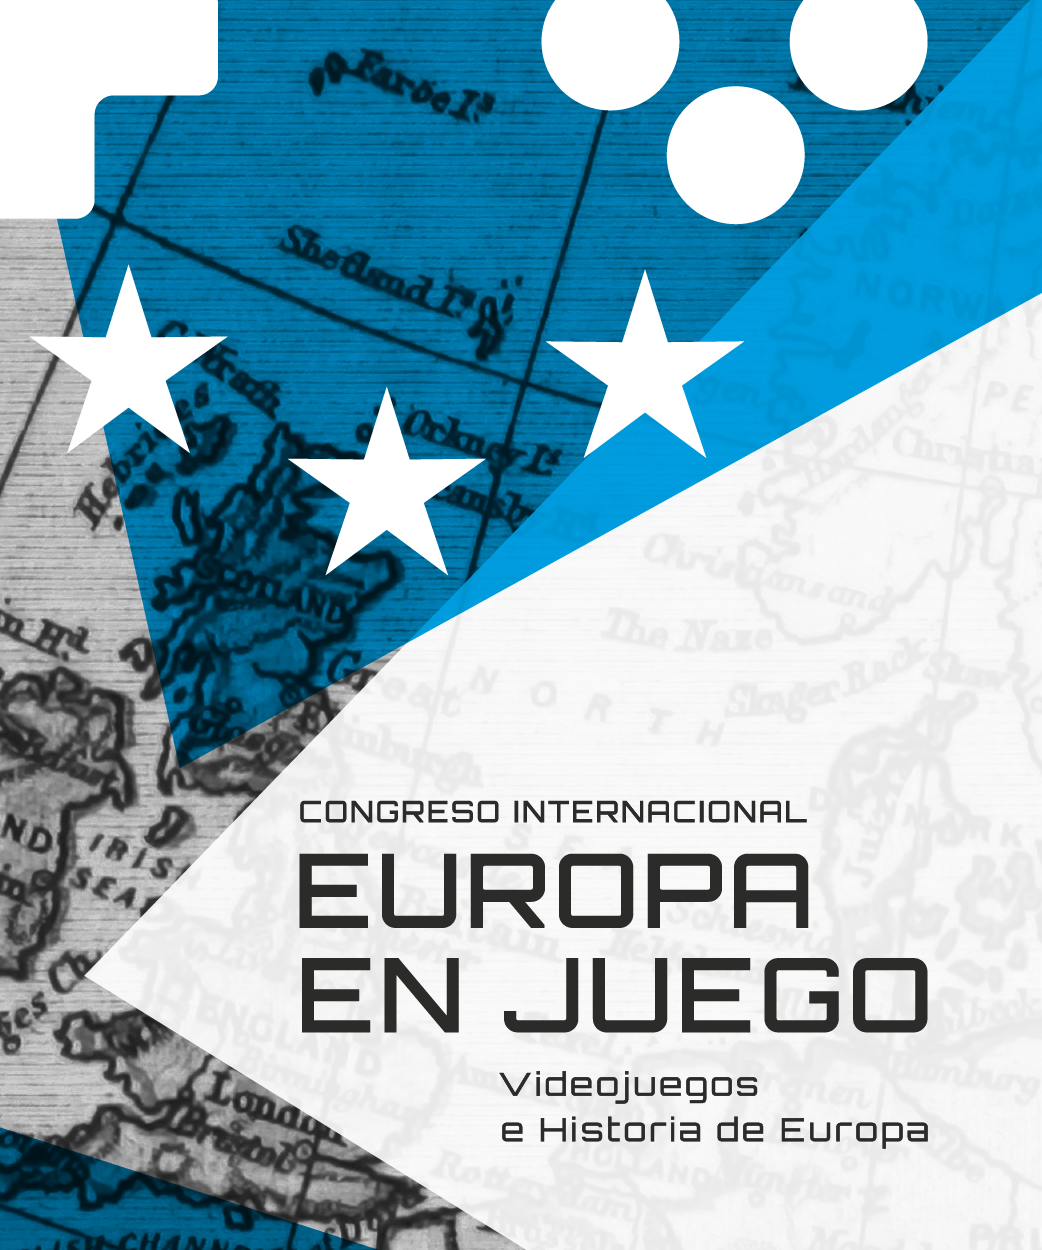 (Español) El CÍA organiza el Congreso Internacional Europa en Juego en el Museo de Arqueología e Historia de Elche